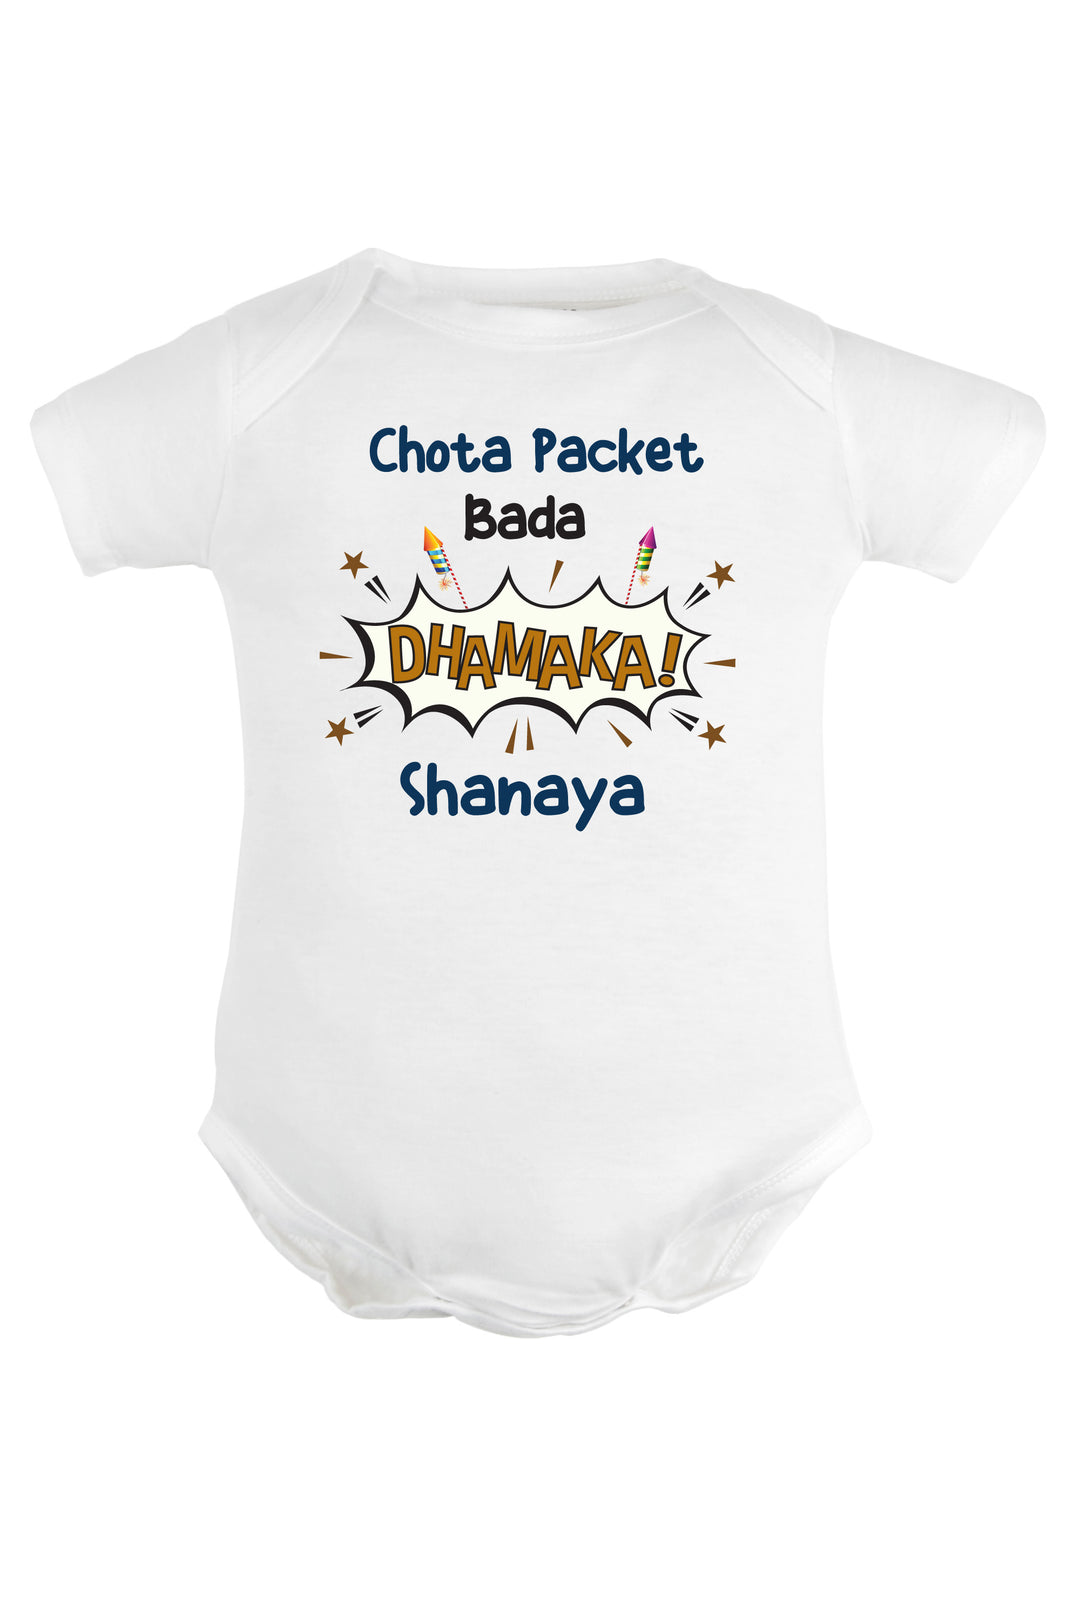 Chota Packet Bada Dhamaka! Baby Romper | Onesies w/ Custom Name